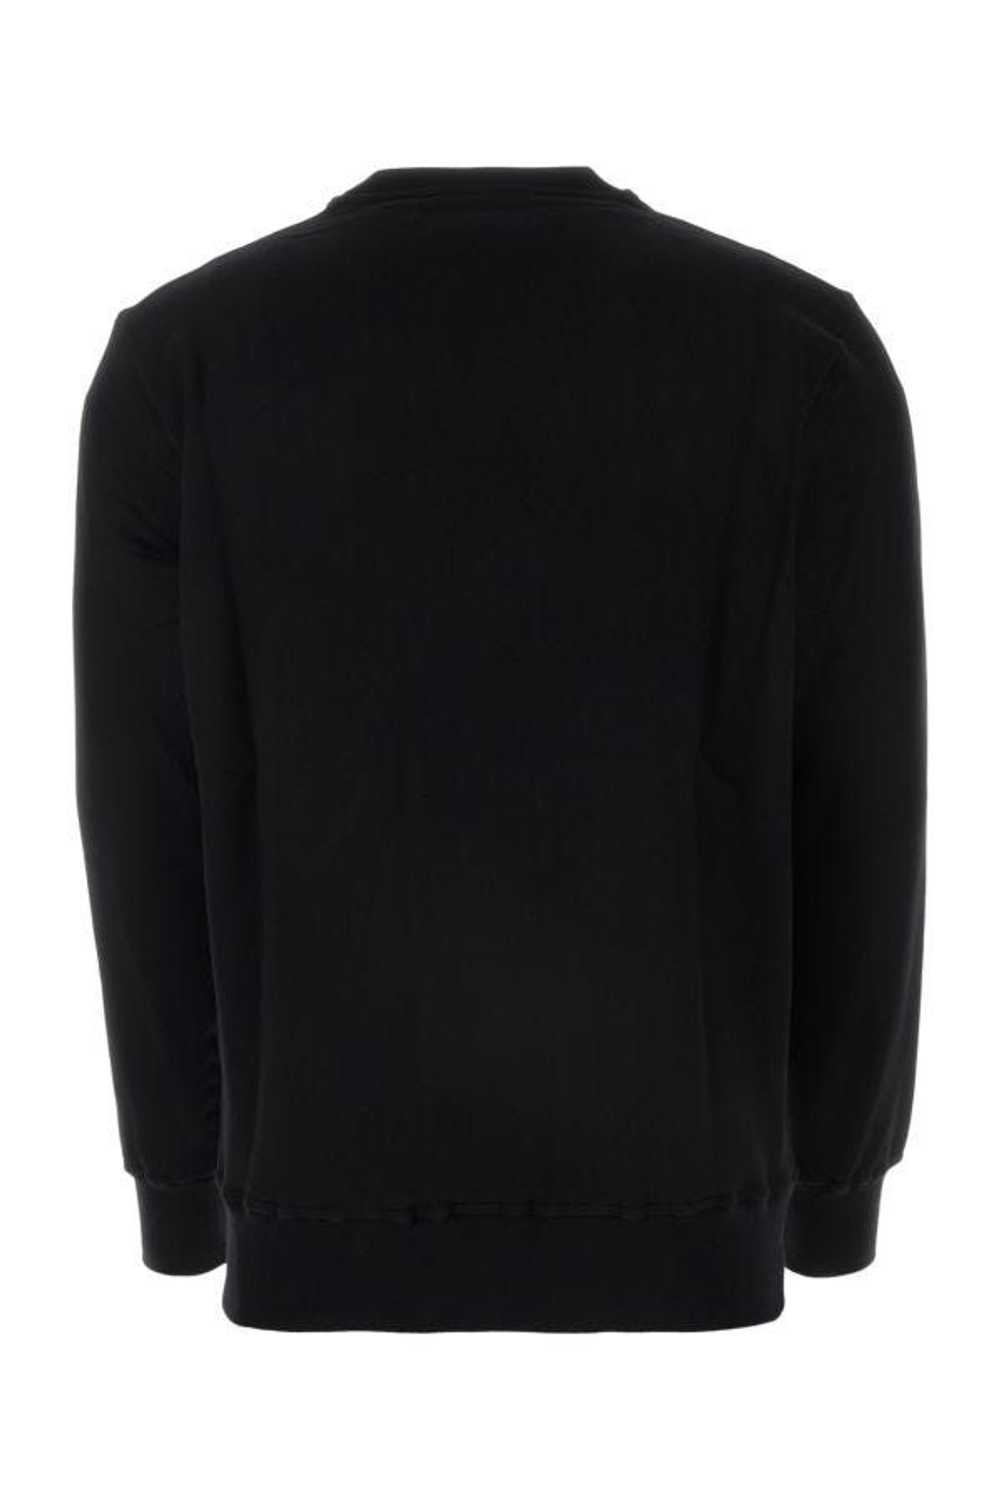 Alexander McQueen Black Cotton Sweatshirt - image 4